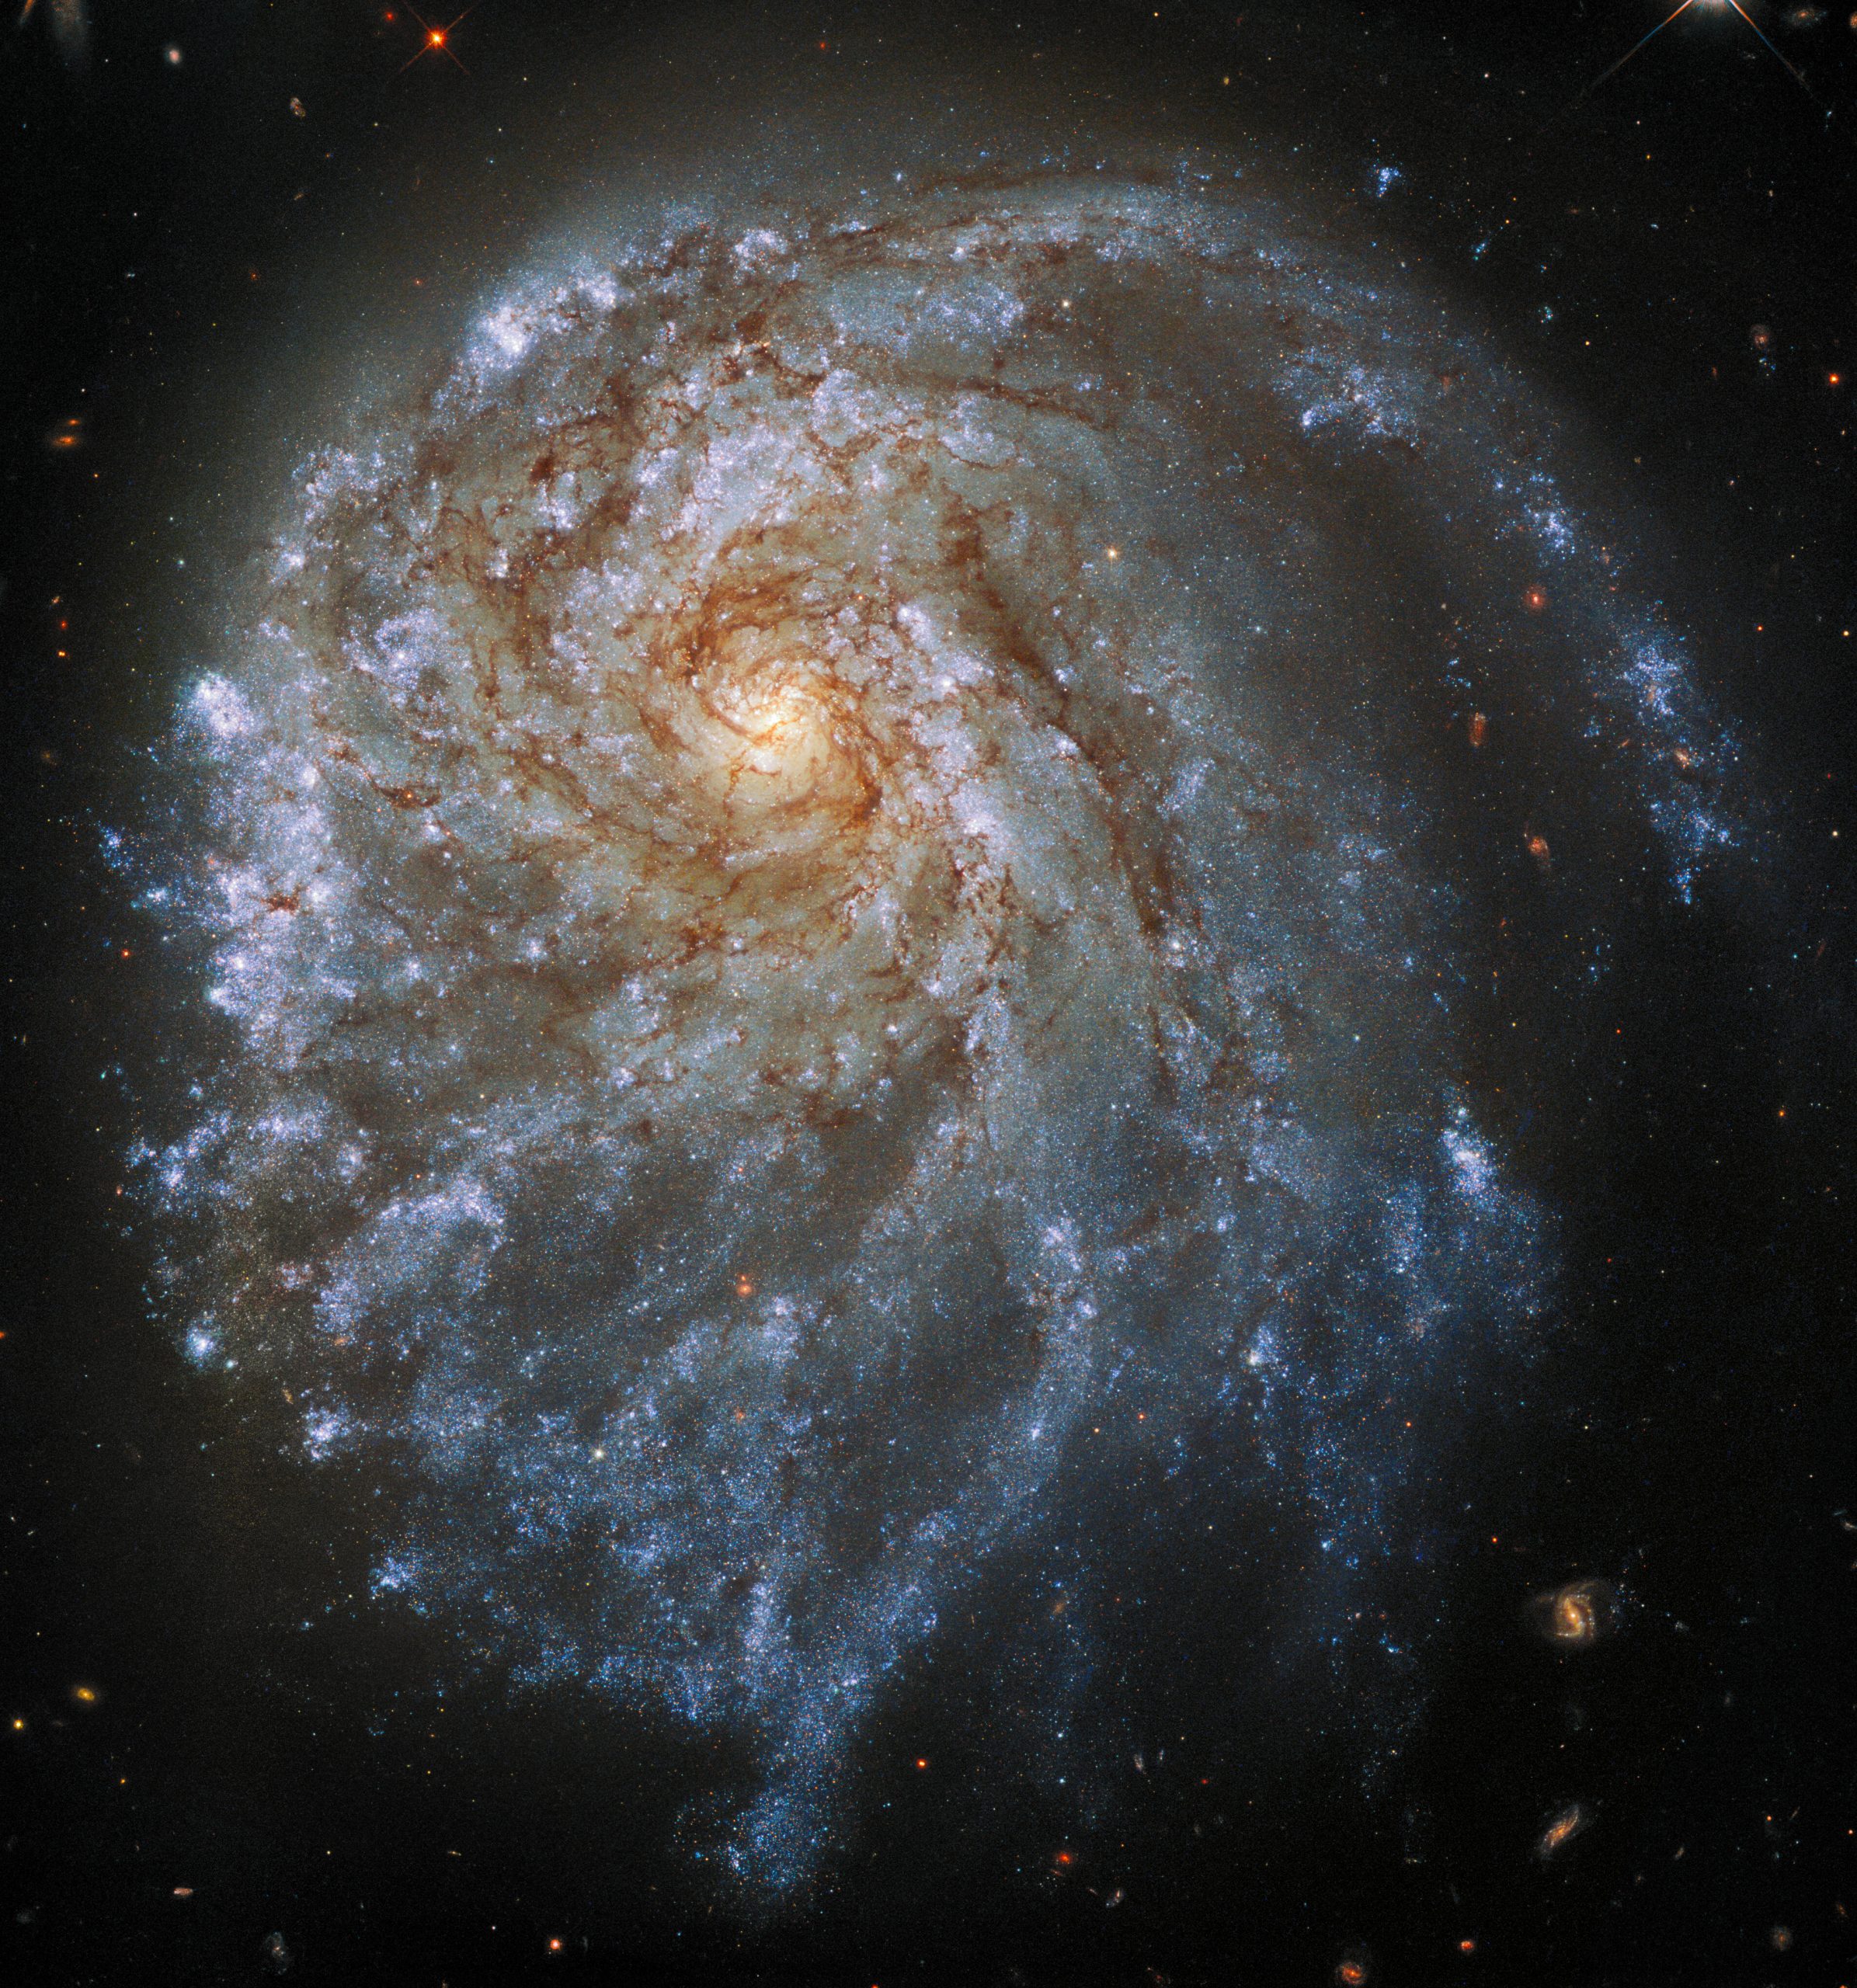 Спиральная галактика NGC 2276, расположенная на расстоянии около 120 миллионов световых лет от нас, сфотографирована здесь Хабблом и используется в календаре для июля. Предоставлено: ЕКА / Хаббл и НАСА, П. Селл.